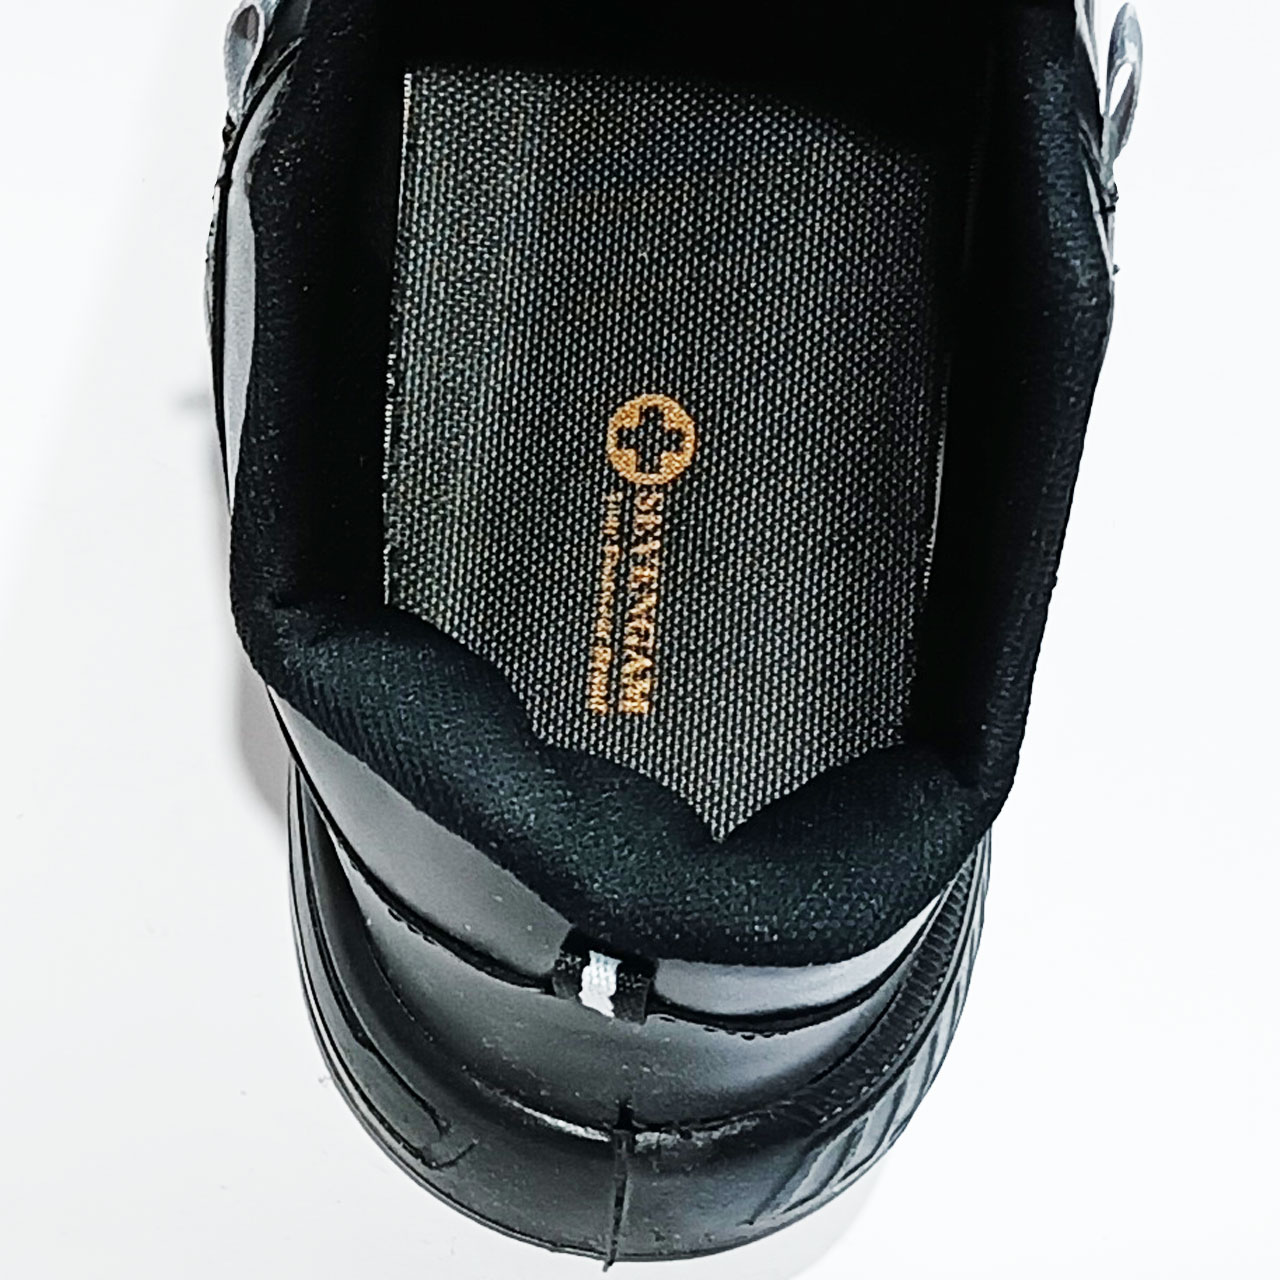 کفش راحتی مردانه مدل سونگام 002 کد SVN 421.002